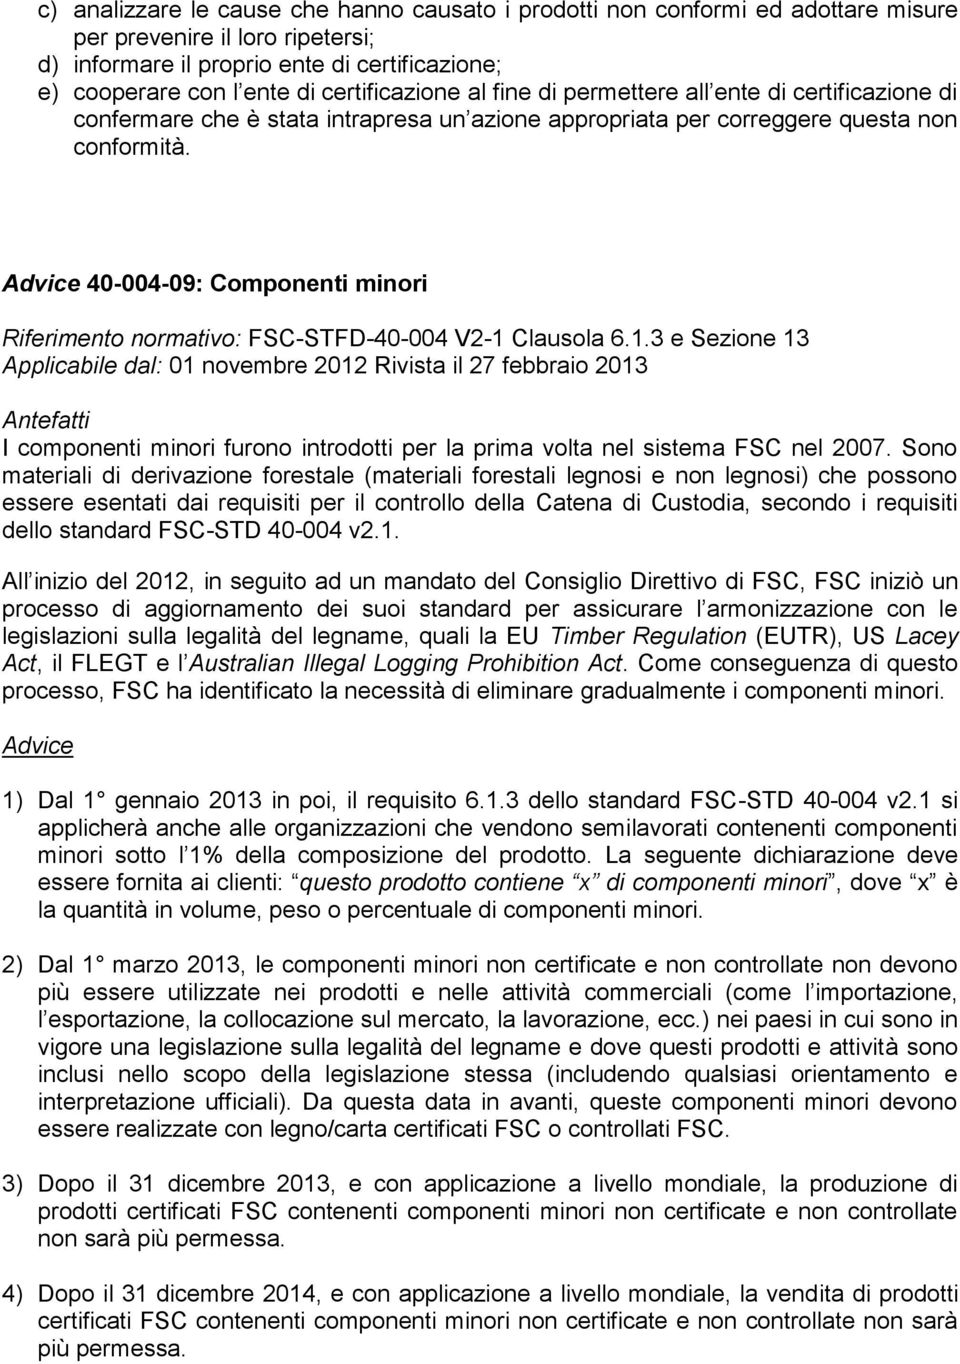 40-004-09: Componenti minori Riferimento normativo: FSC-STFD-40-004 V2-1 